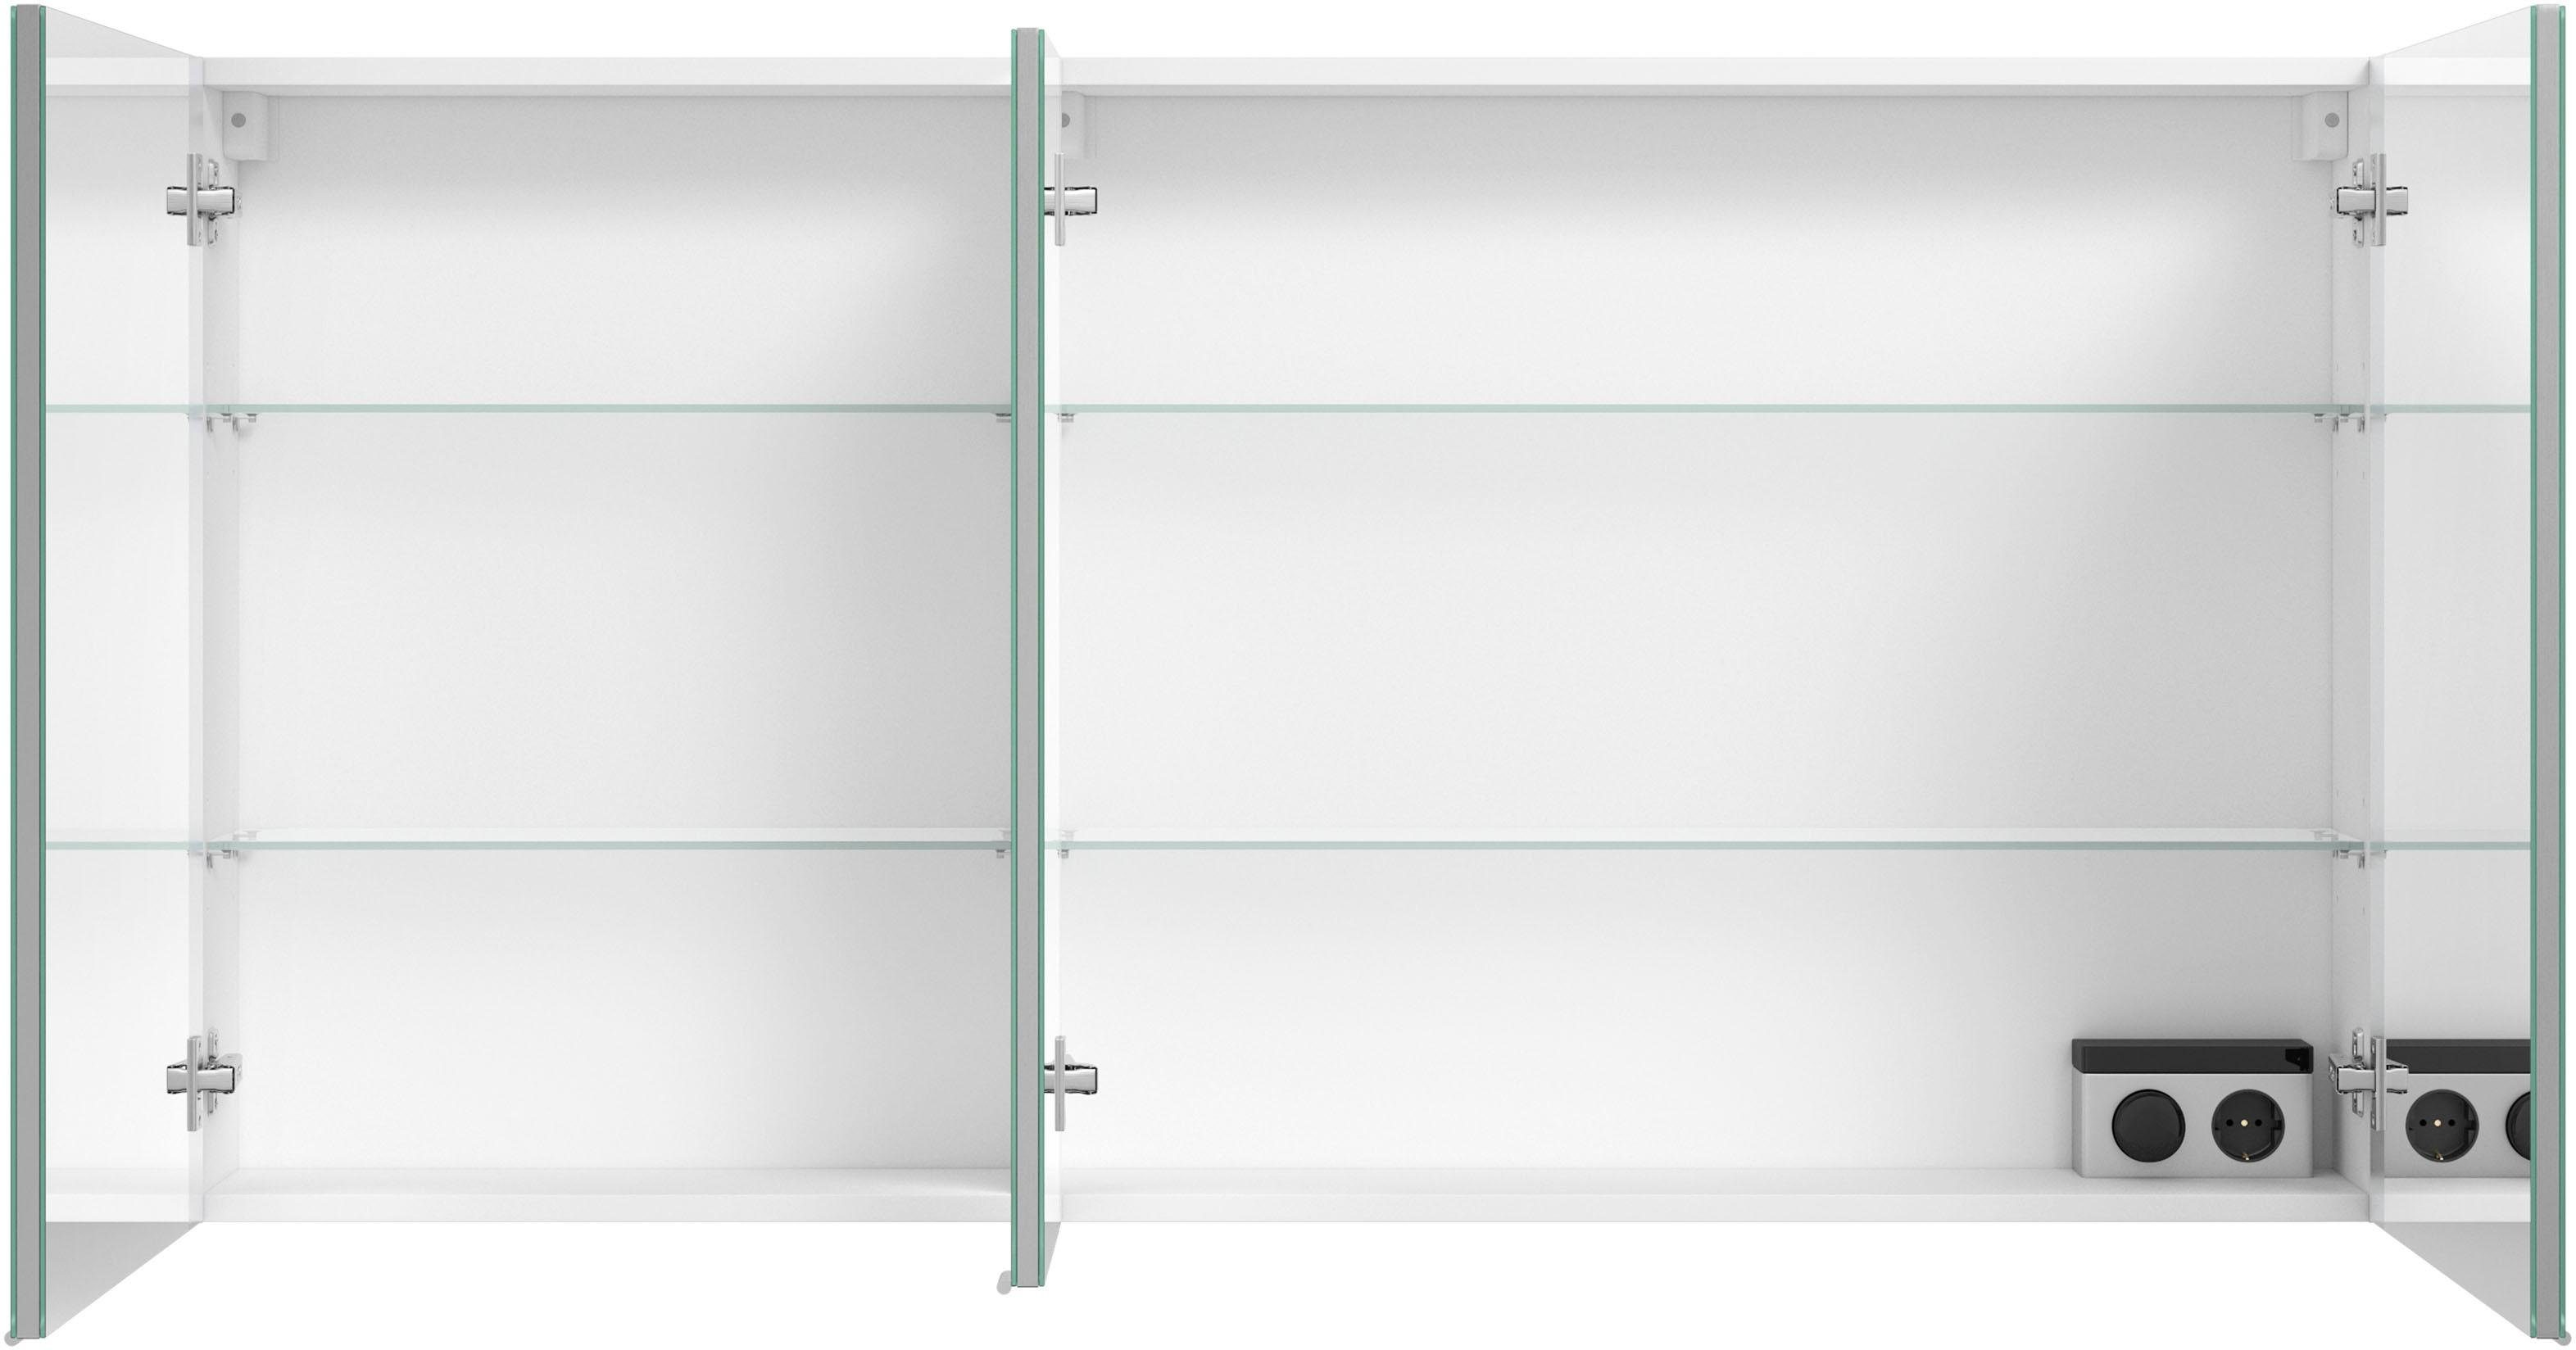 MARLIN Spiegelschrank 3980 Türen, doppelseitig mit verspiegelten vormontiert